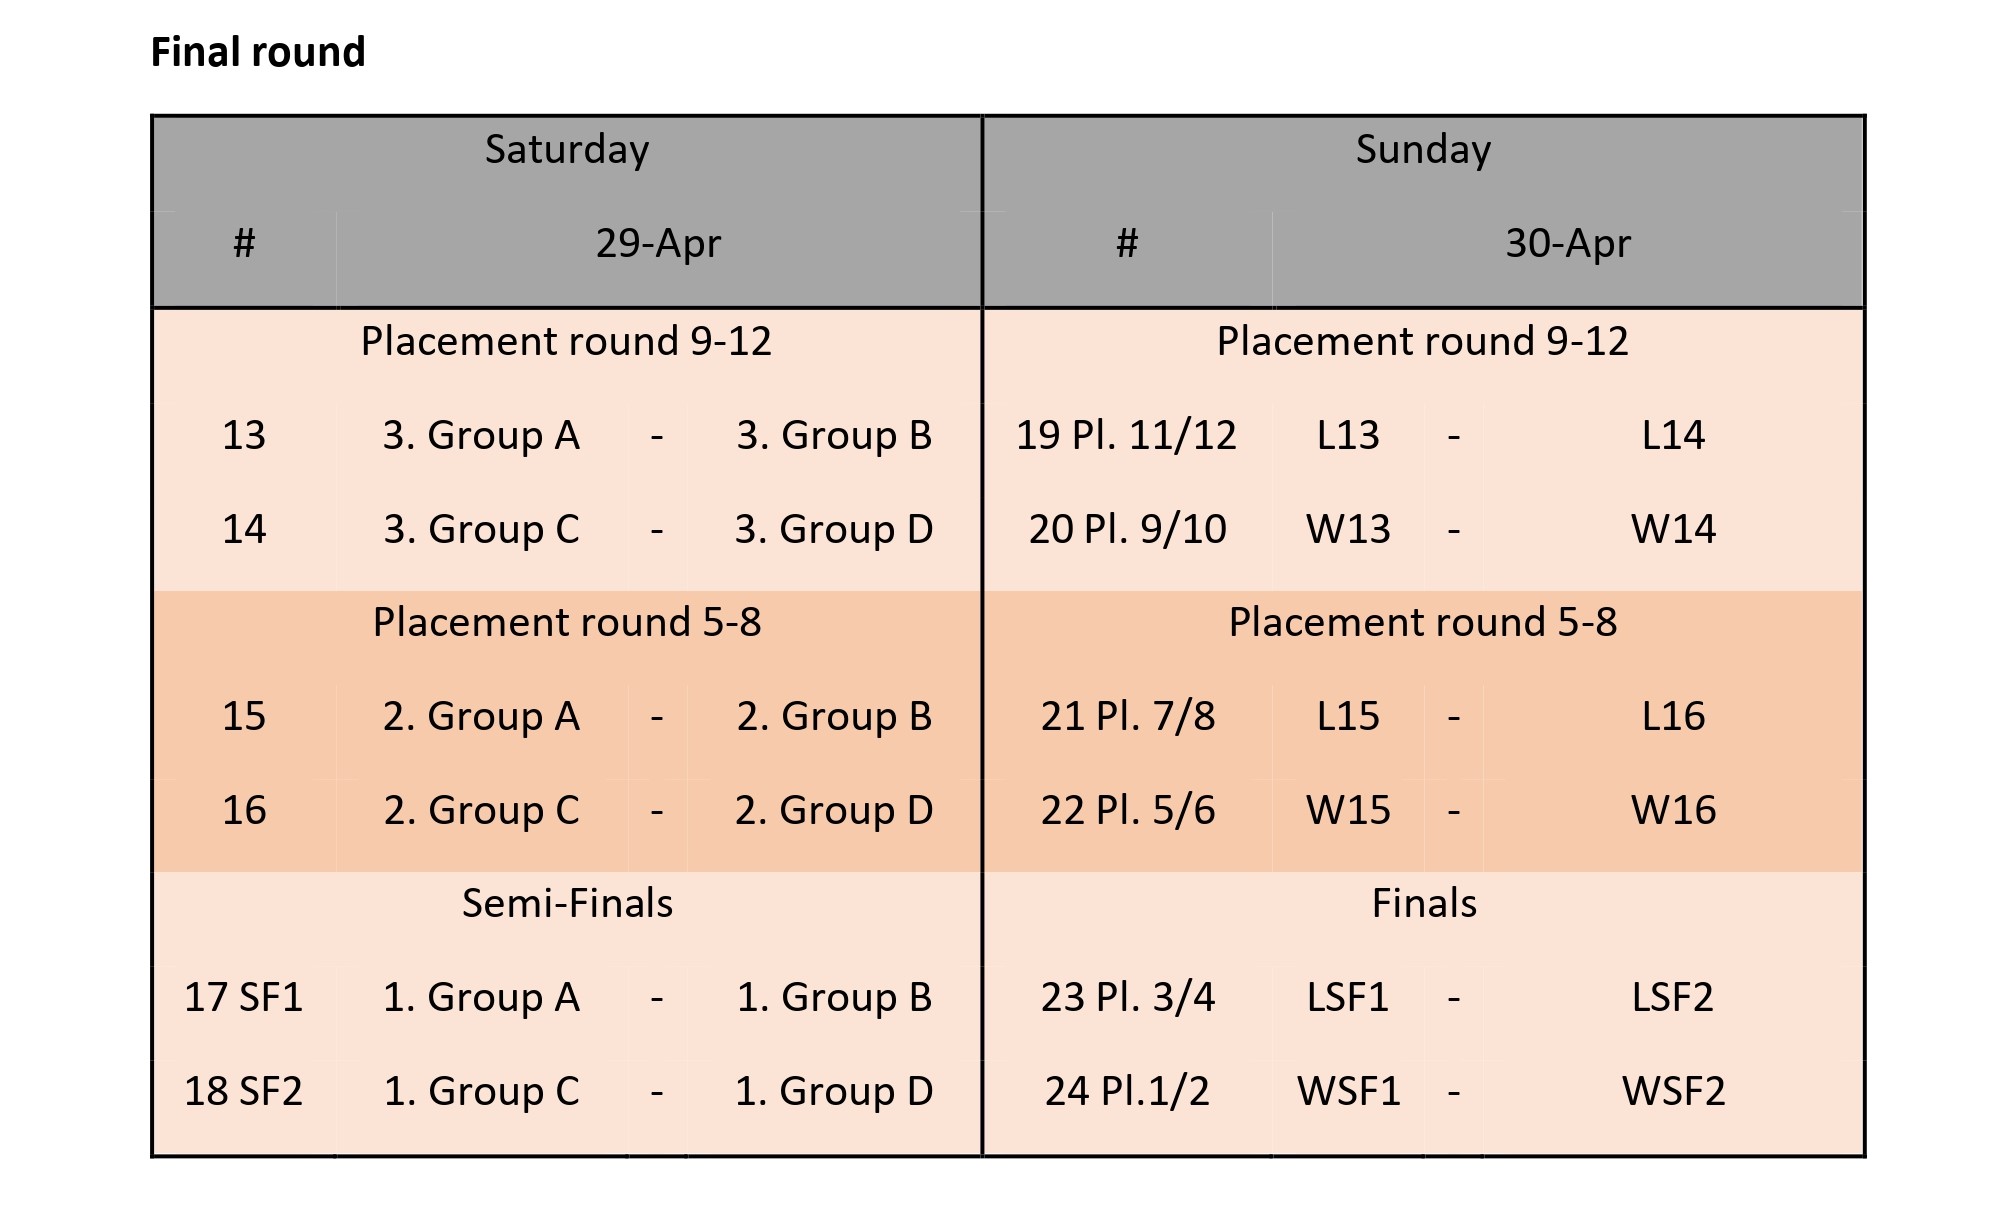 Final round schedule